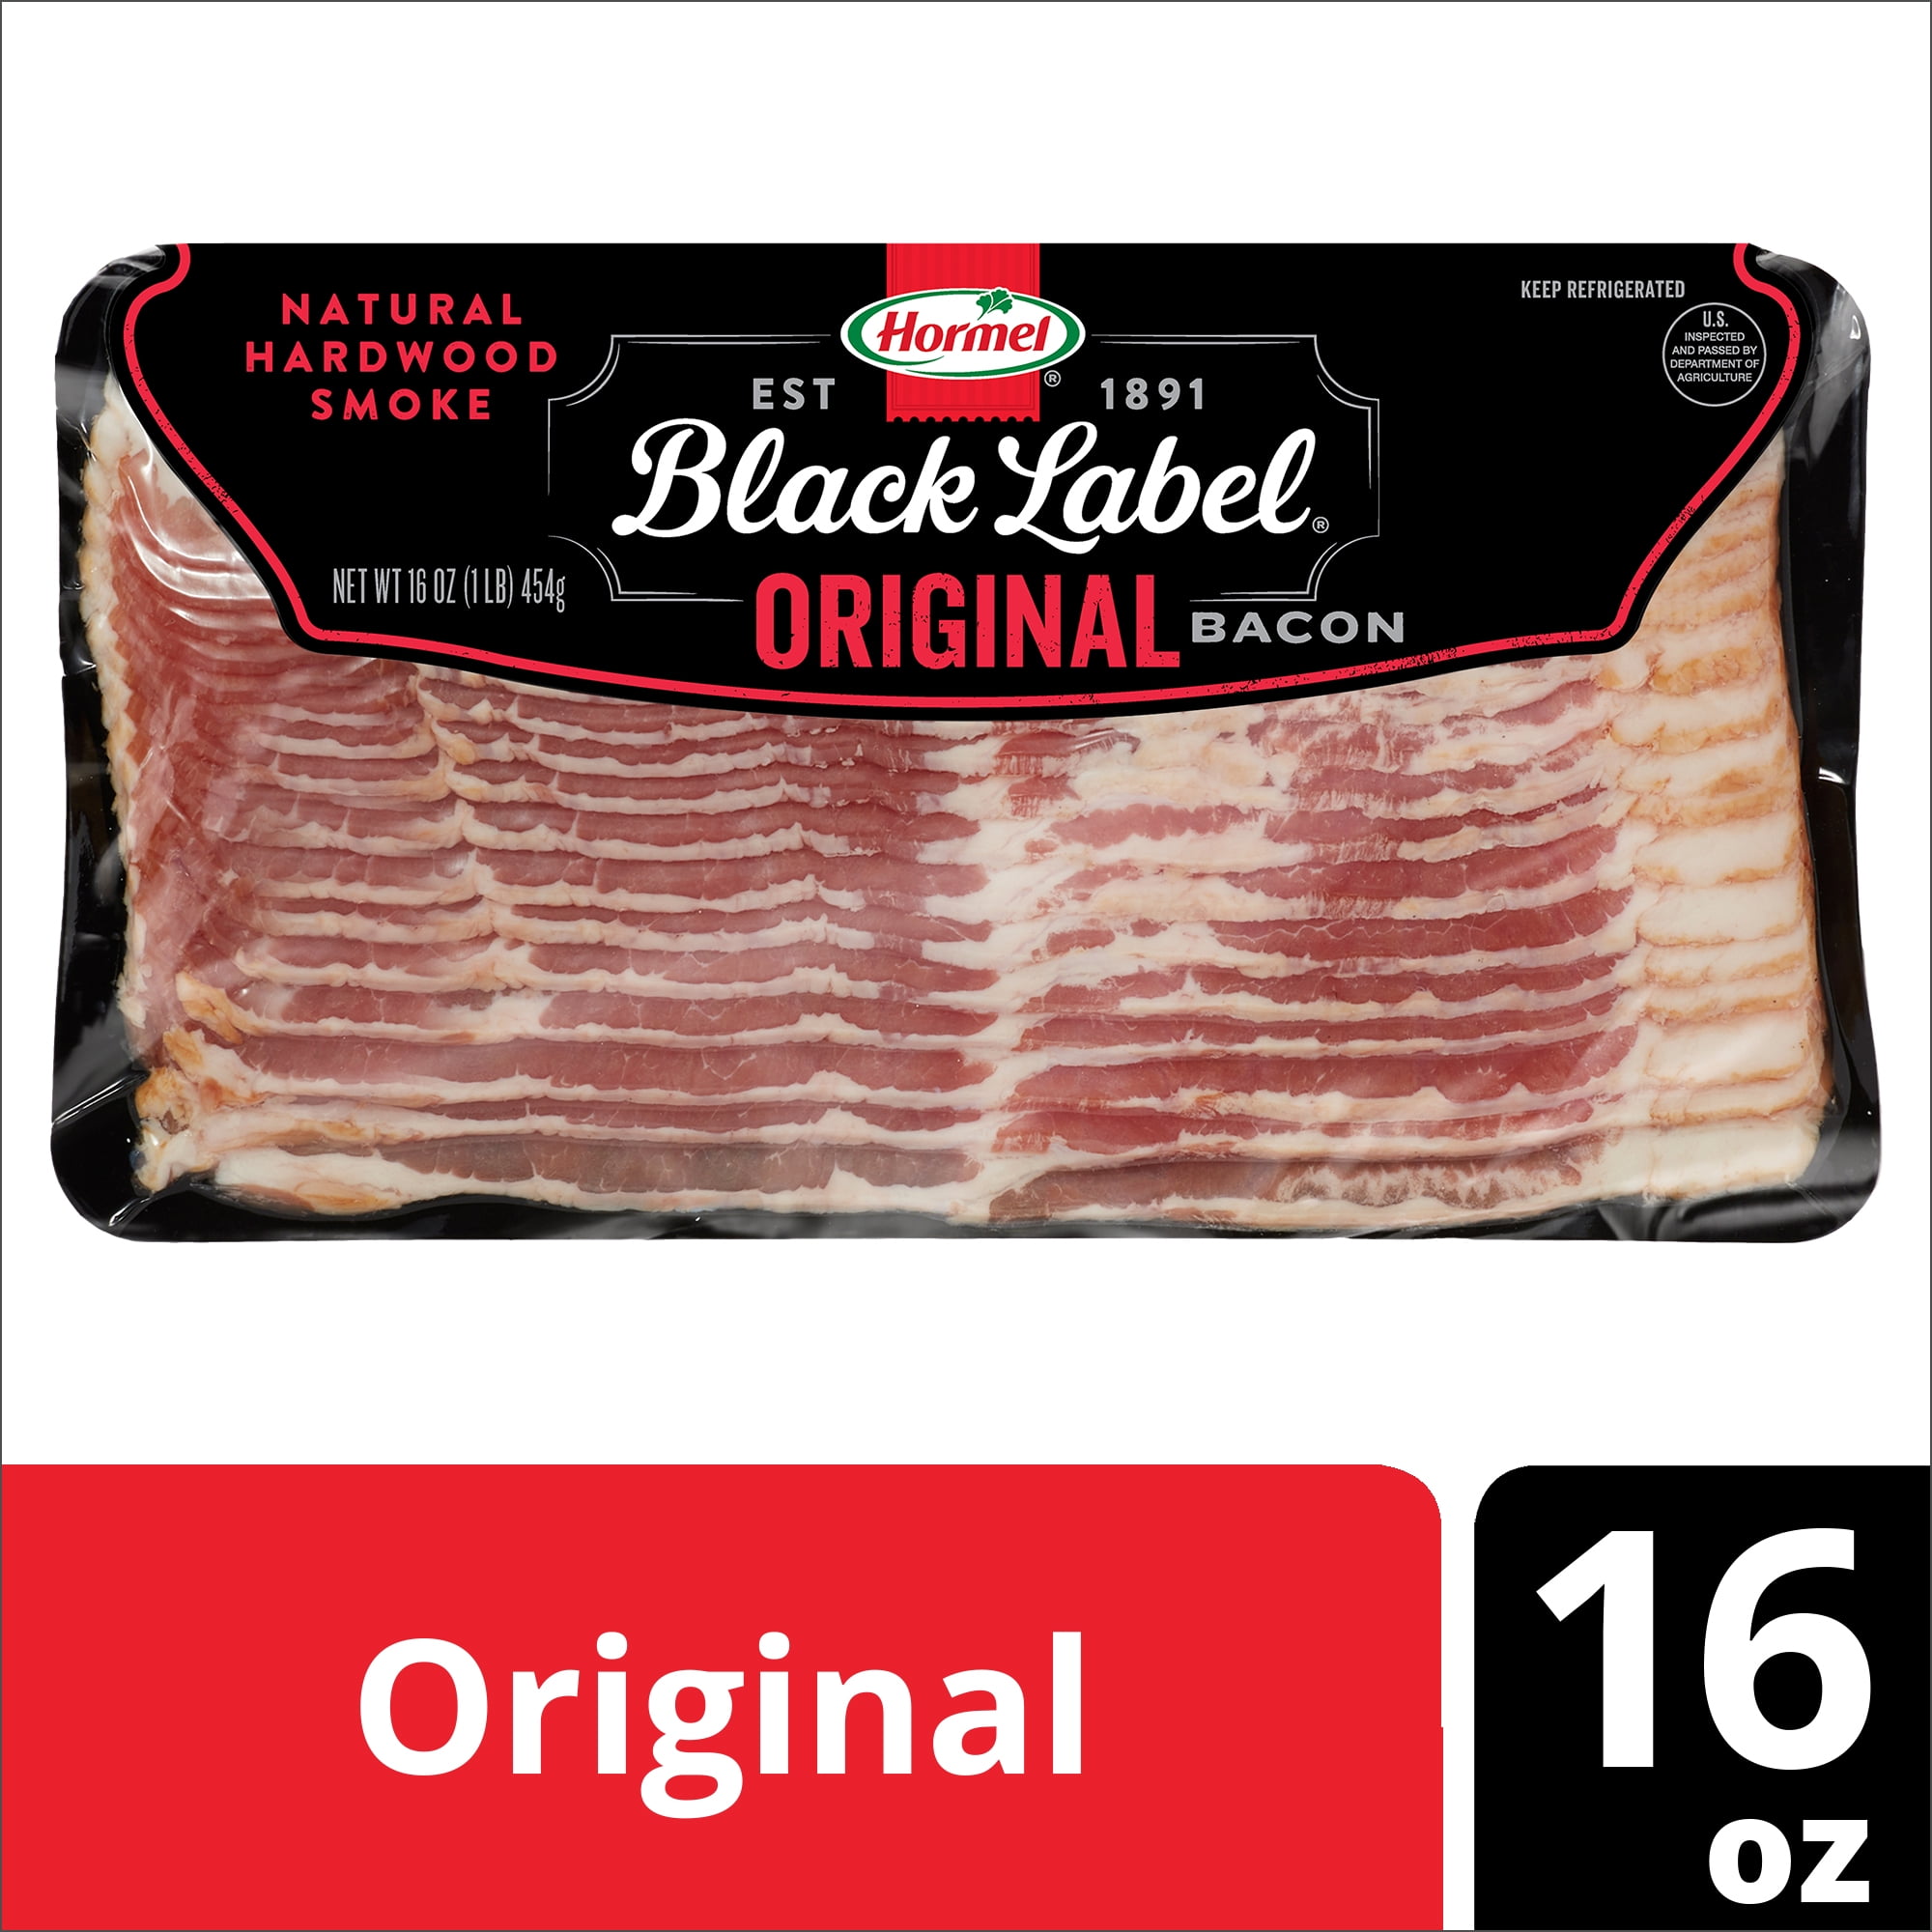 Hormel Black Label, Natural Hardwood Smoke Original Pork Bacon, 16 oz Pack